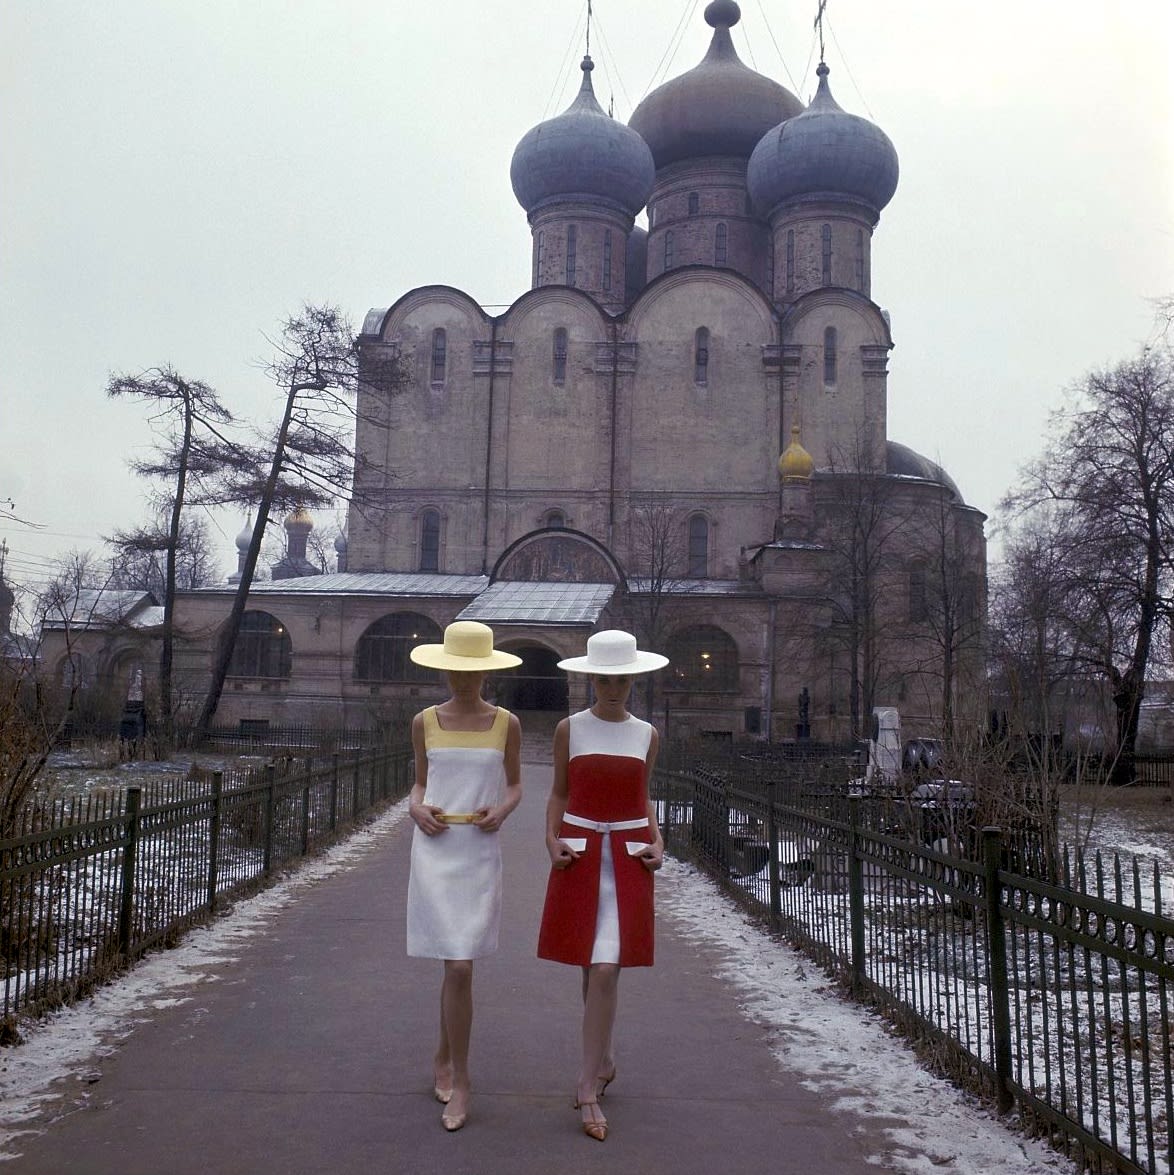 Dutch fashion models Sonja Bakker and Femke van de Bosch in Moscow. Photo by Paul Huf, USSR, 1965